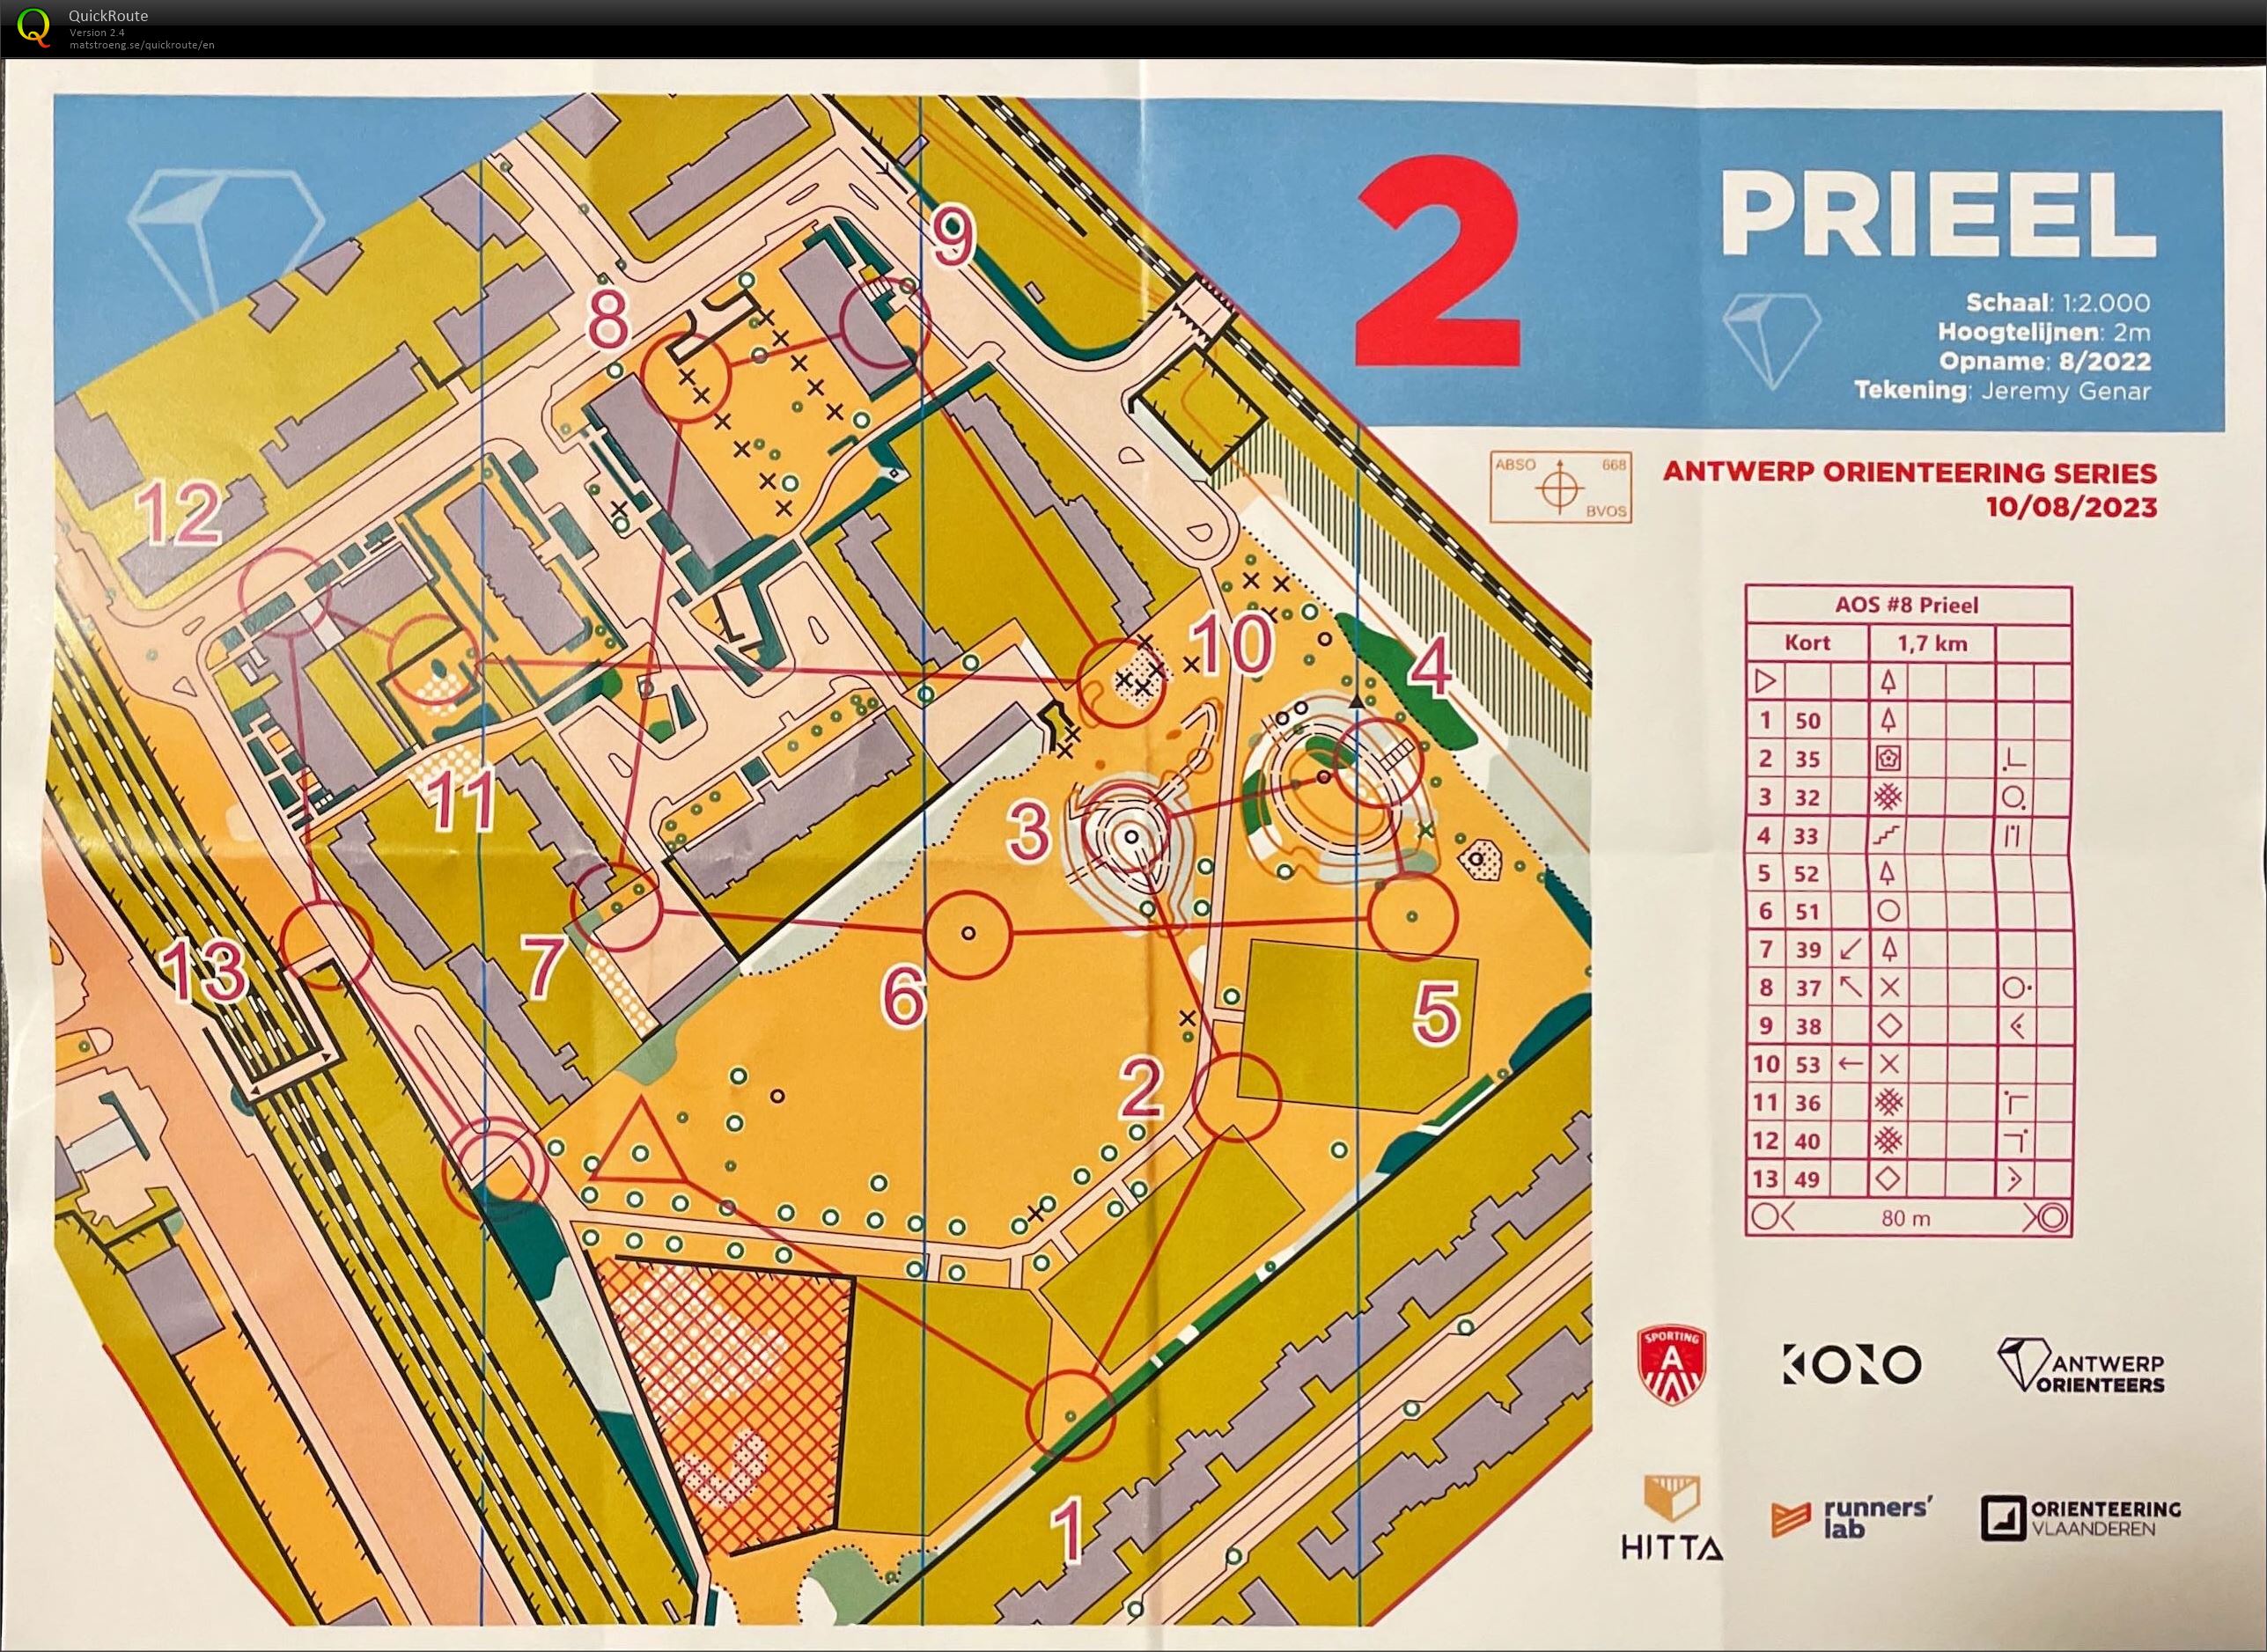 Antwerp Orienteering Series - Prieel - Kort (10.08.2023)